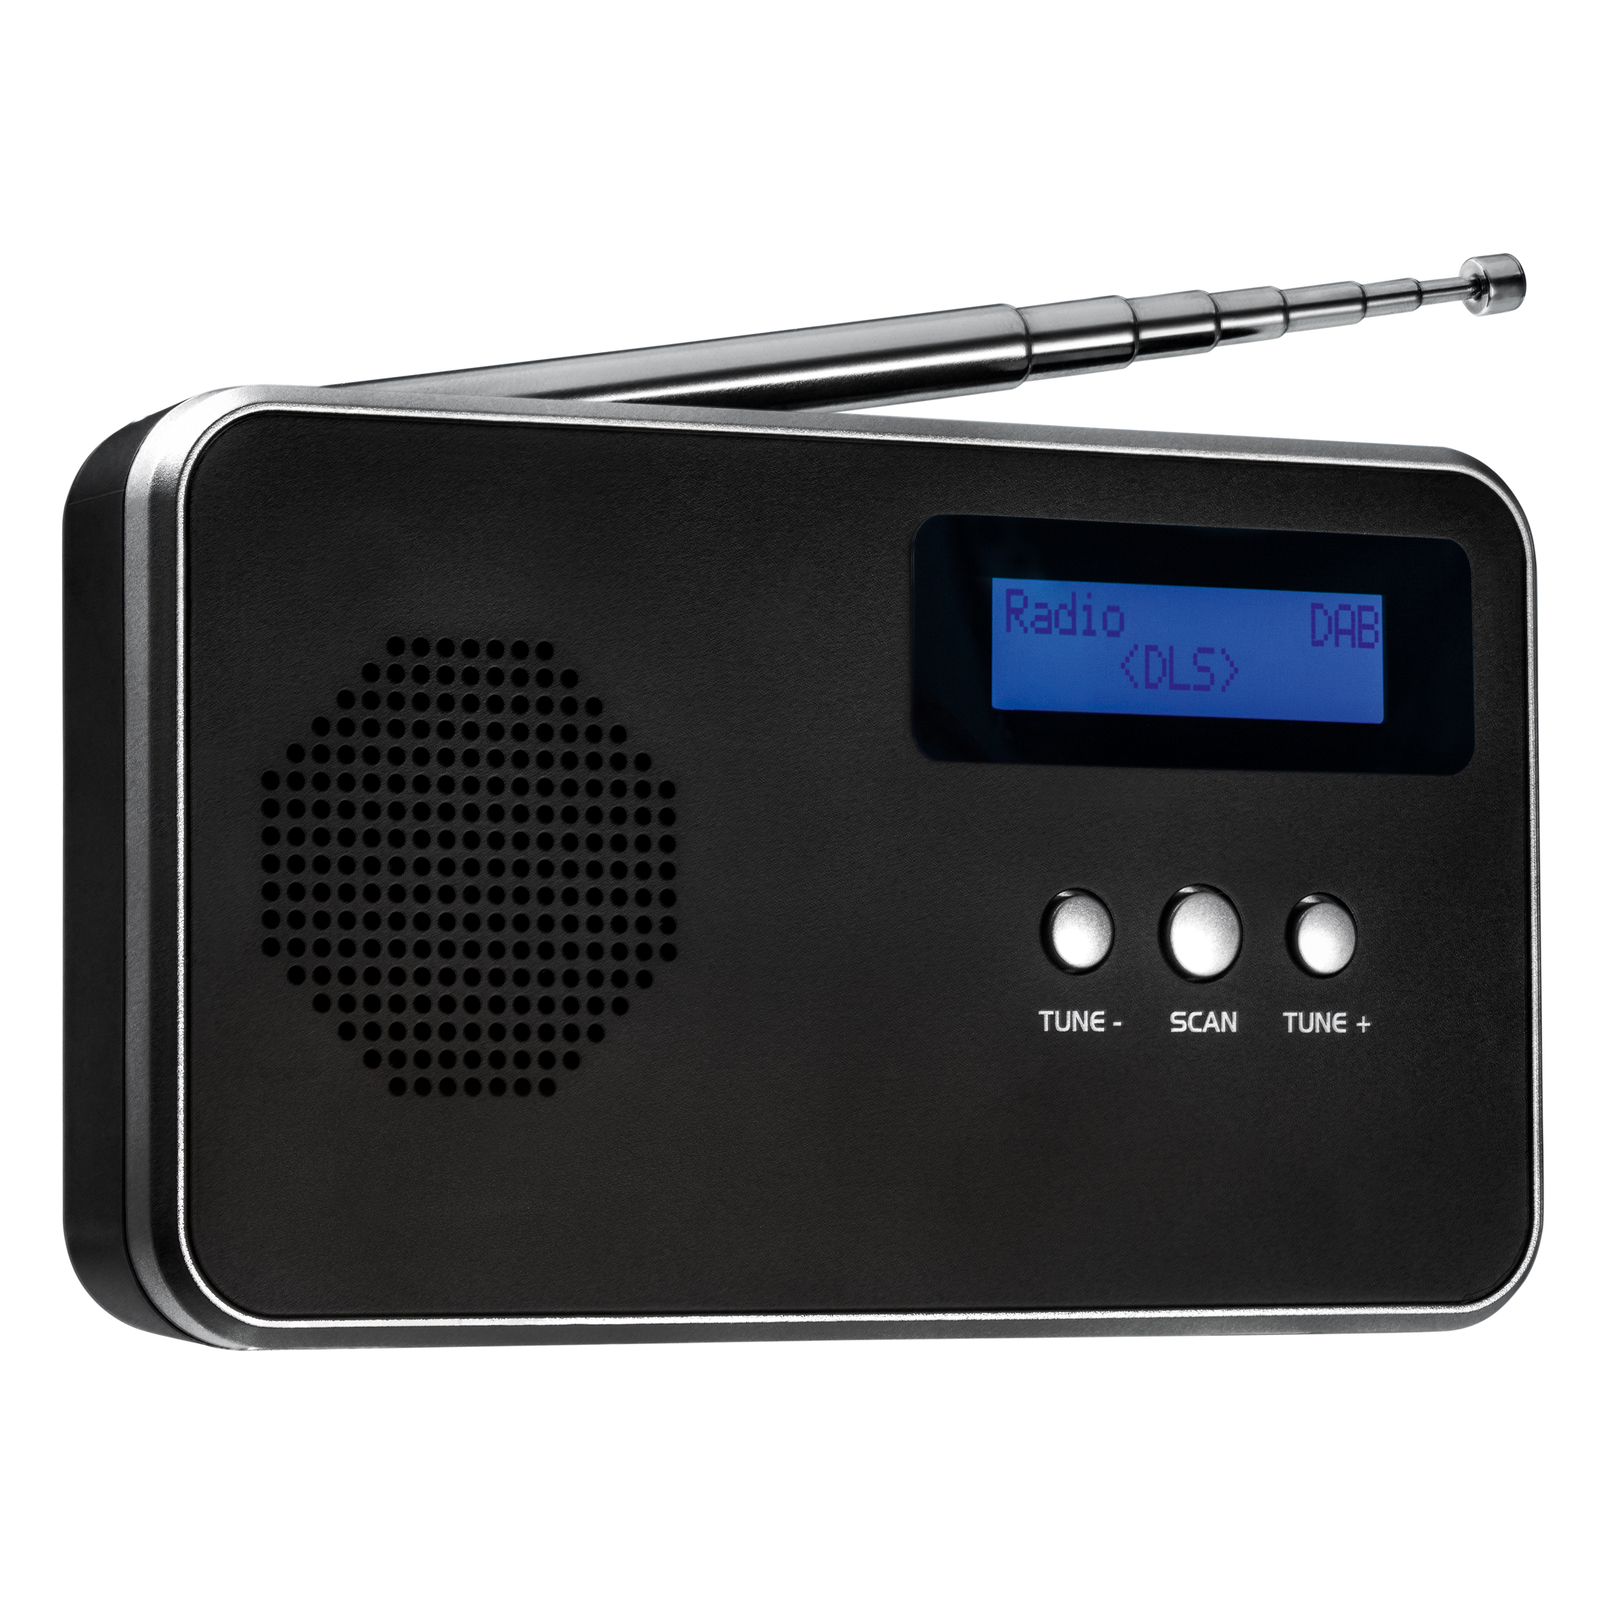 LM Tragbares Digitalradio FM / DAB+ REFLECTS-BARCELOS BLACK SILVER schwarz, silber